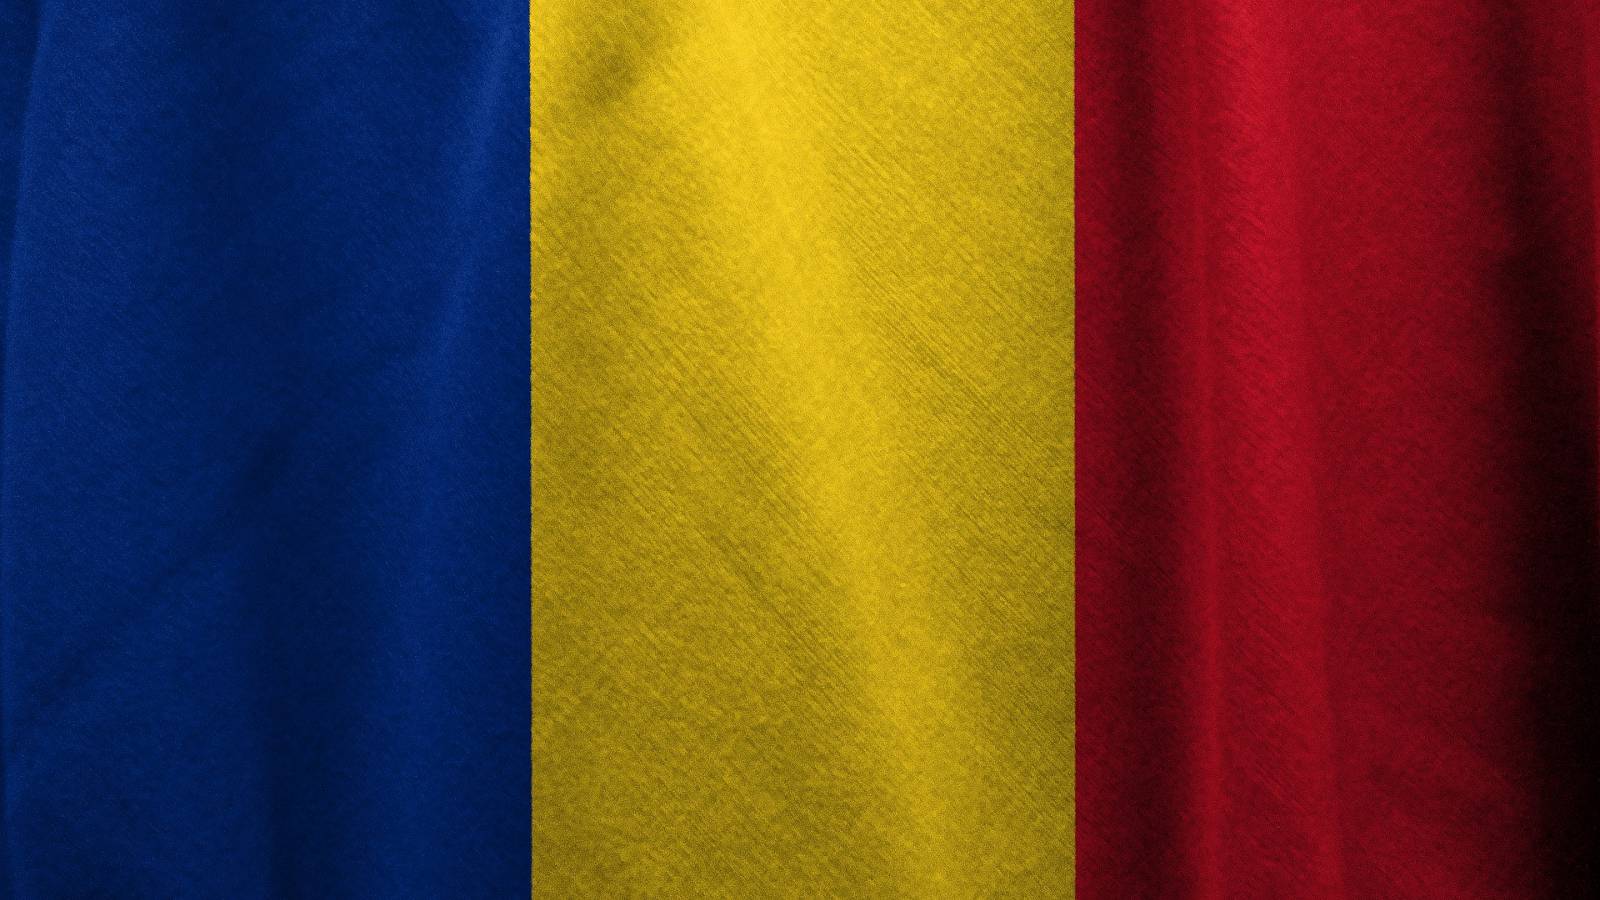 Incidensraterne for COVID-19 i Rumæniens amter 27. januar 2022